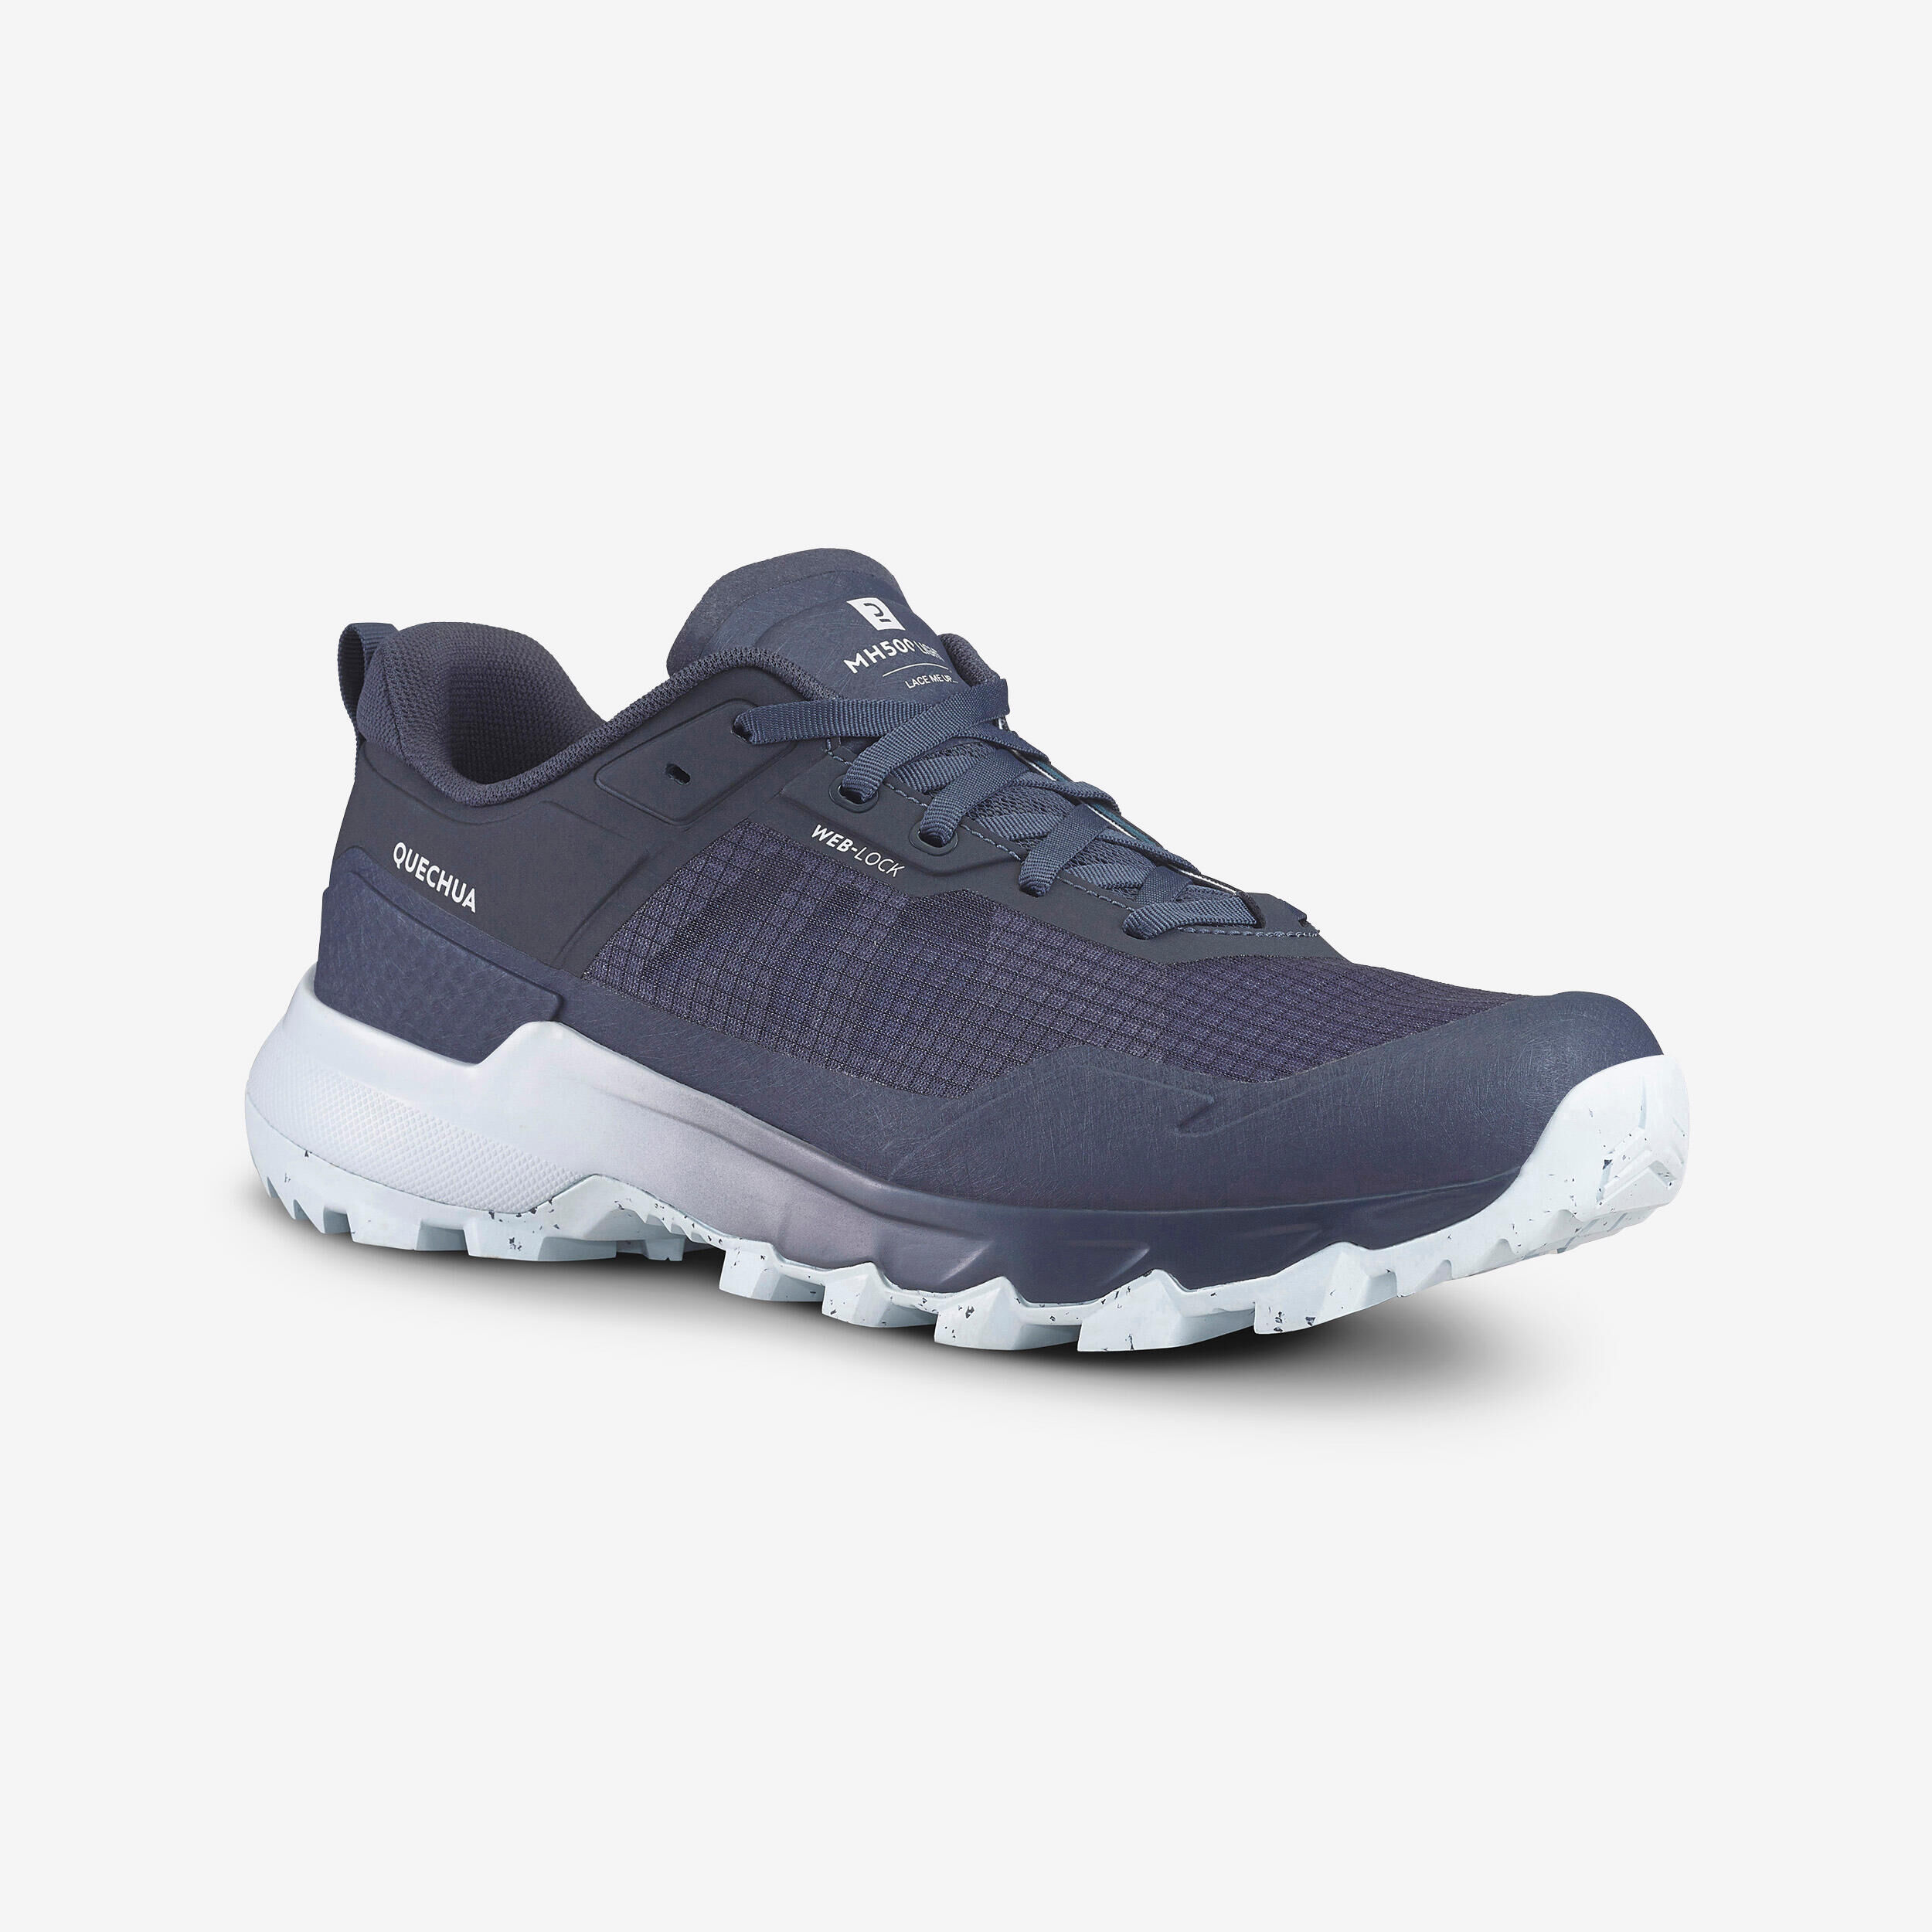 QUECHUA Men's mountain Hiking shoes - MH500 - Grey